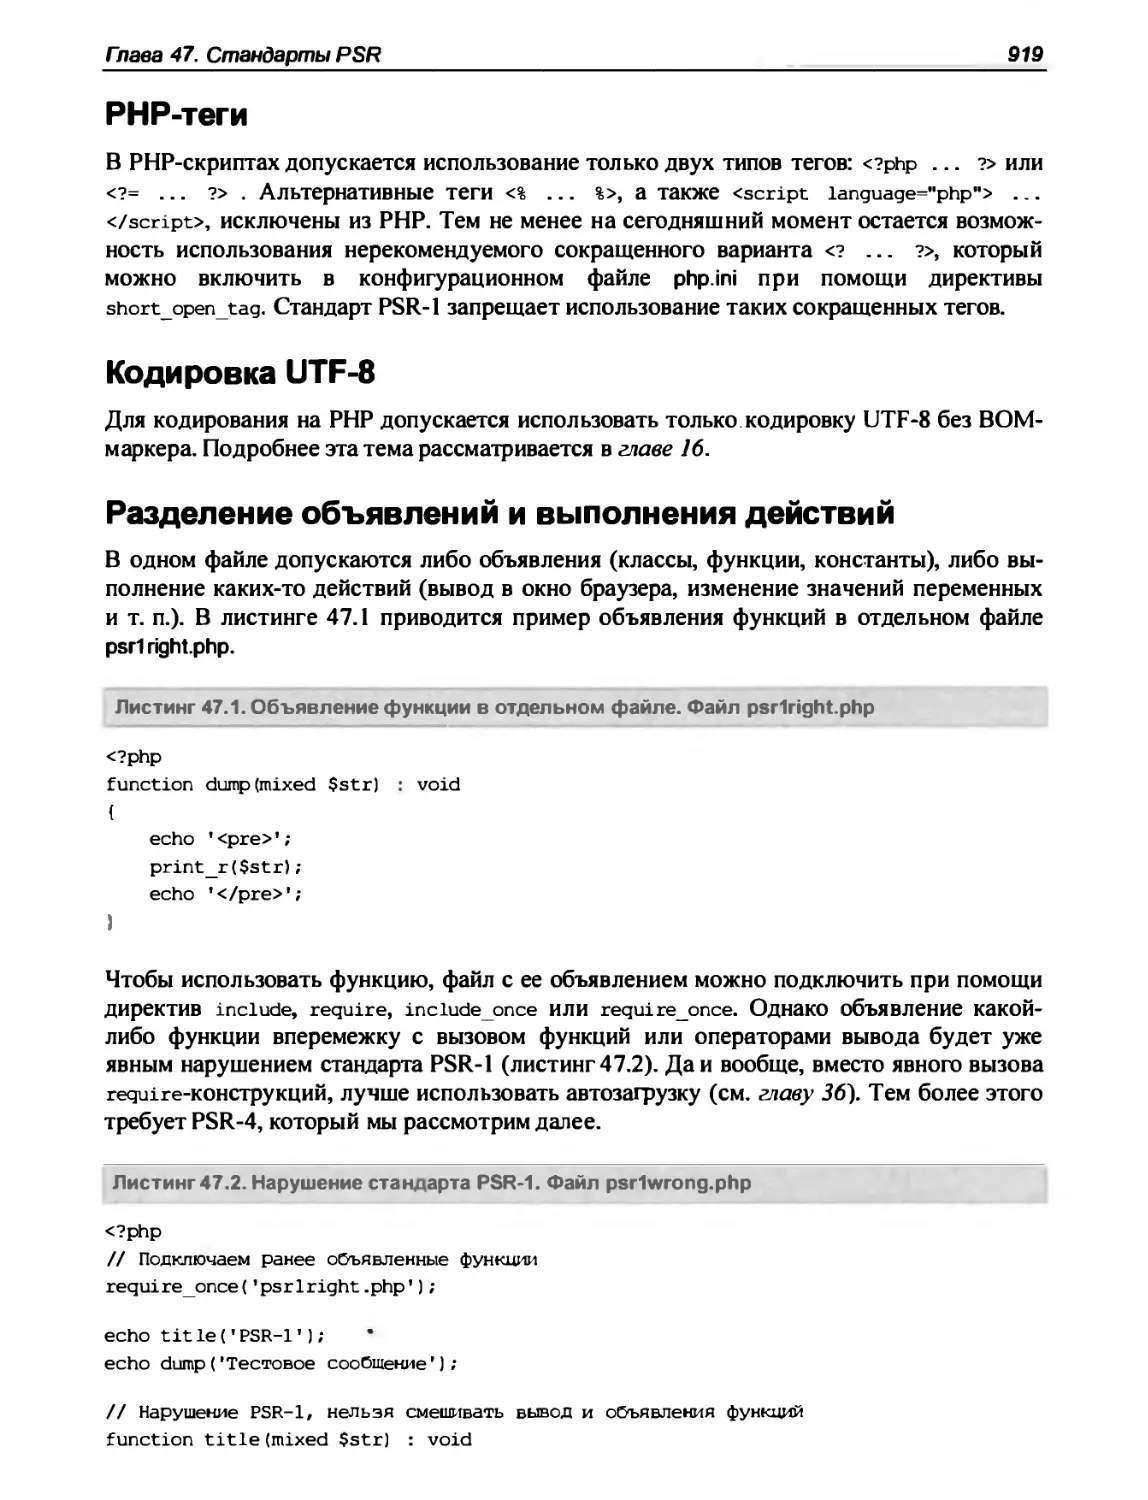 Кодировка UTF-8
Разделение объявлений и выполнения действий